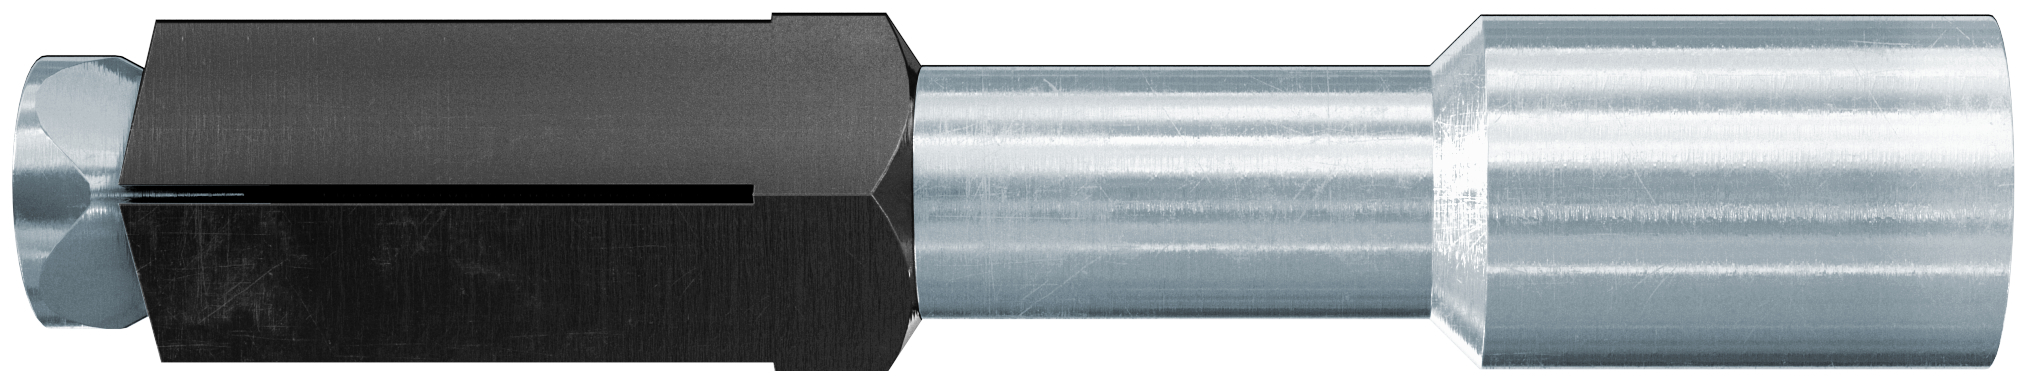 fischer Tassello acciaio FPX M8 I K filettato internamente (3 Pz.) Fissaggio metallico per calcestruzzo cellulare FPX-I K in blister.